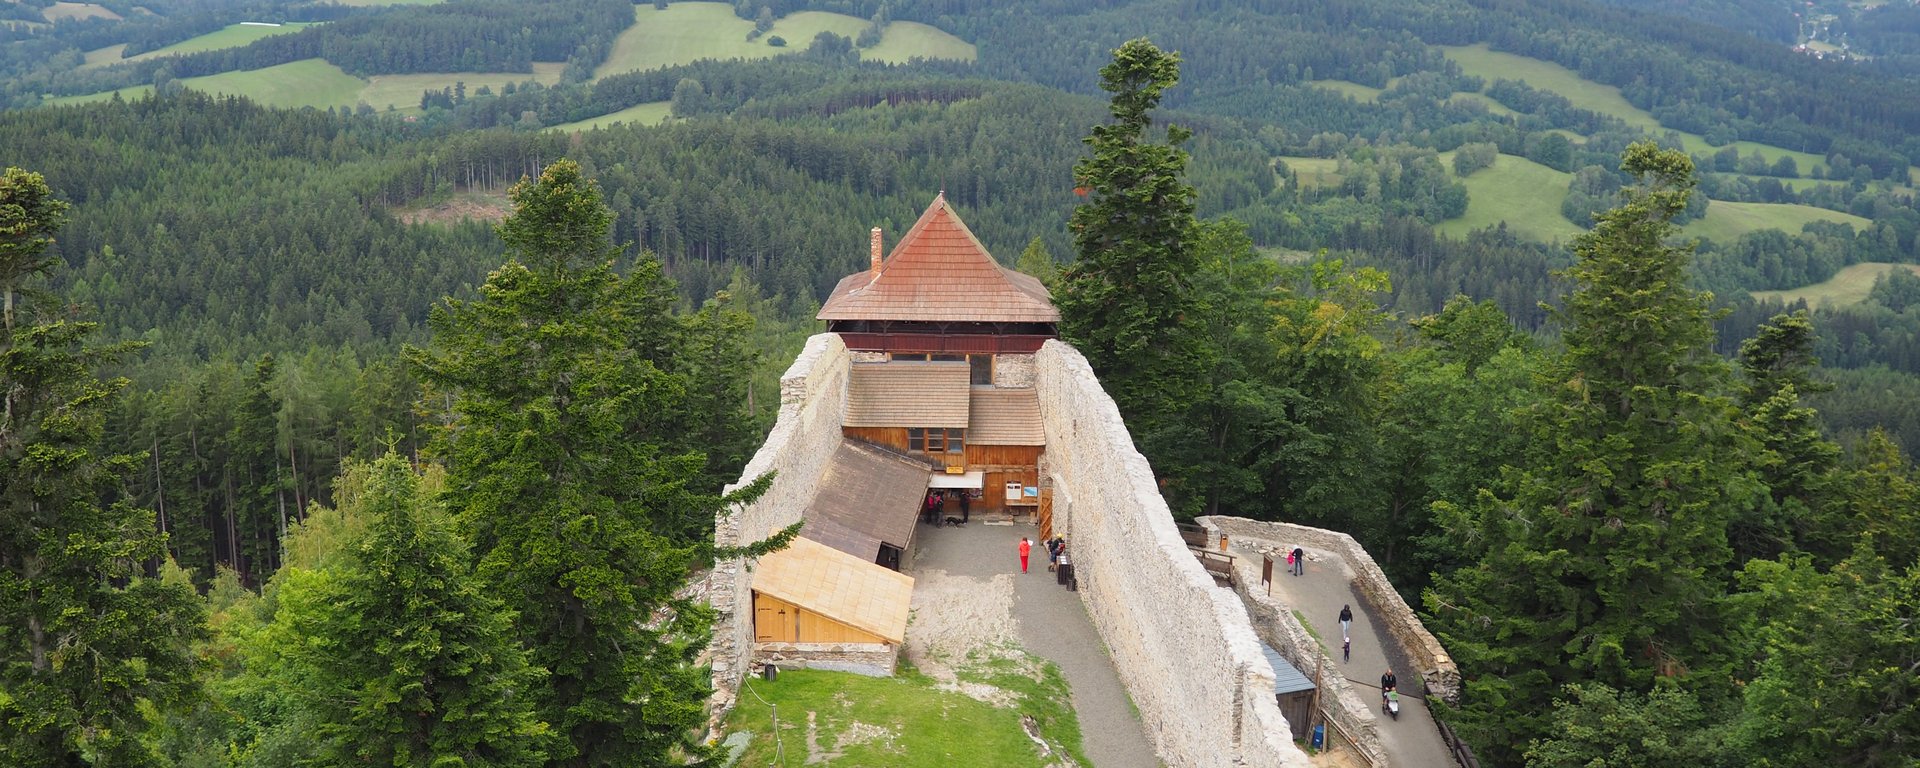 Blick auf die Burg Kasperk und die Landschaft in der tschechischen Republik 